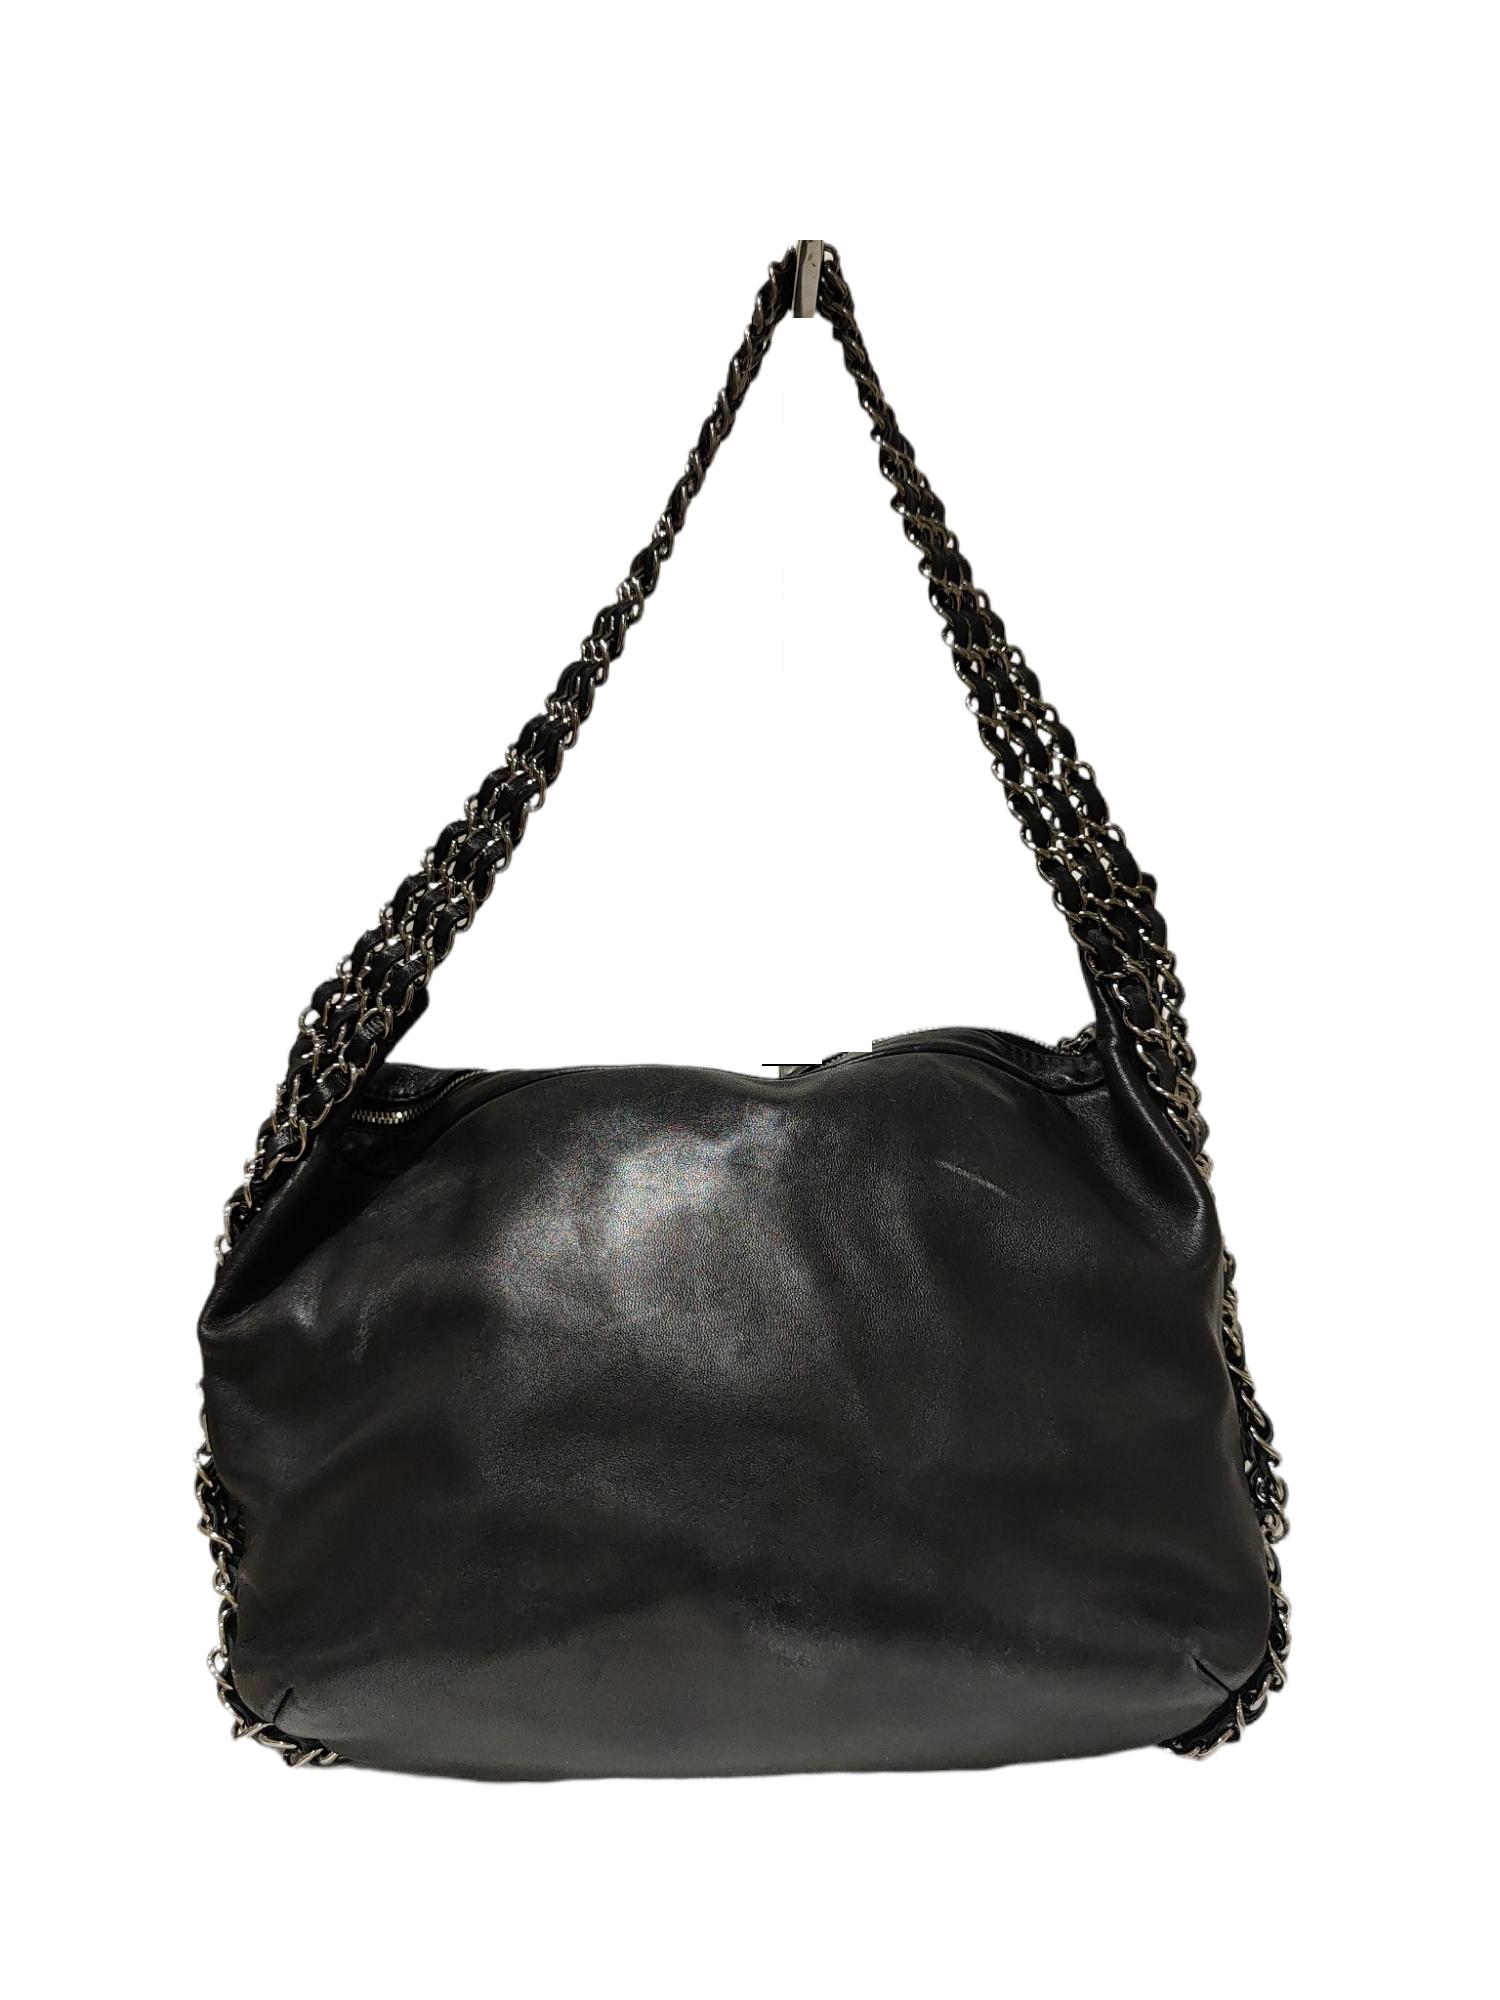 Chanel Black leather chain shoulder bag 2